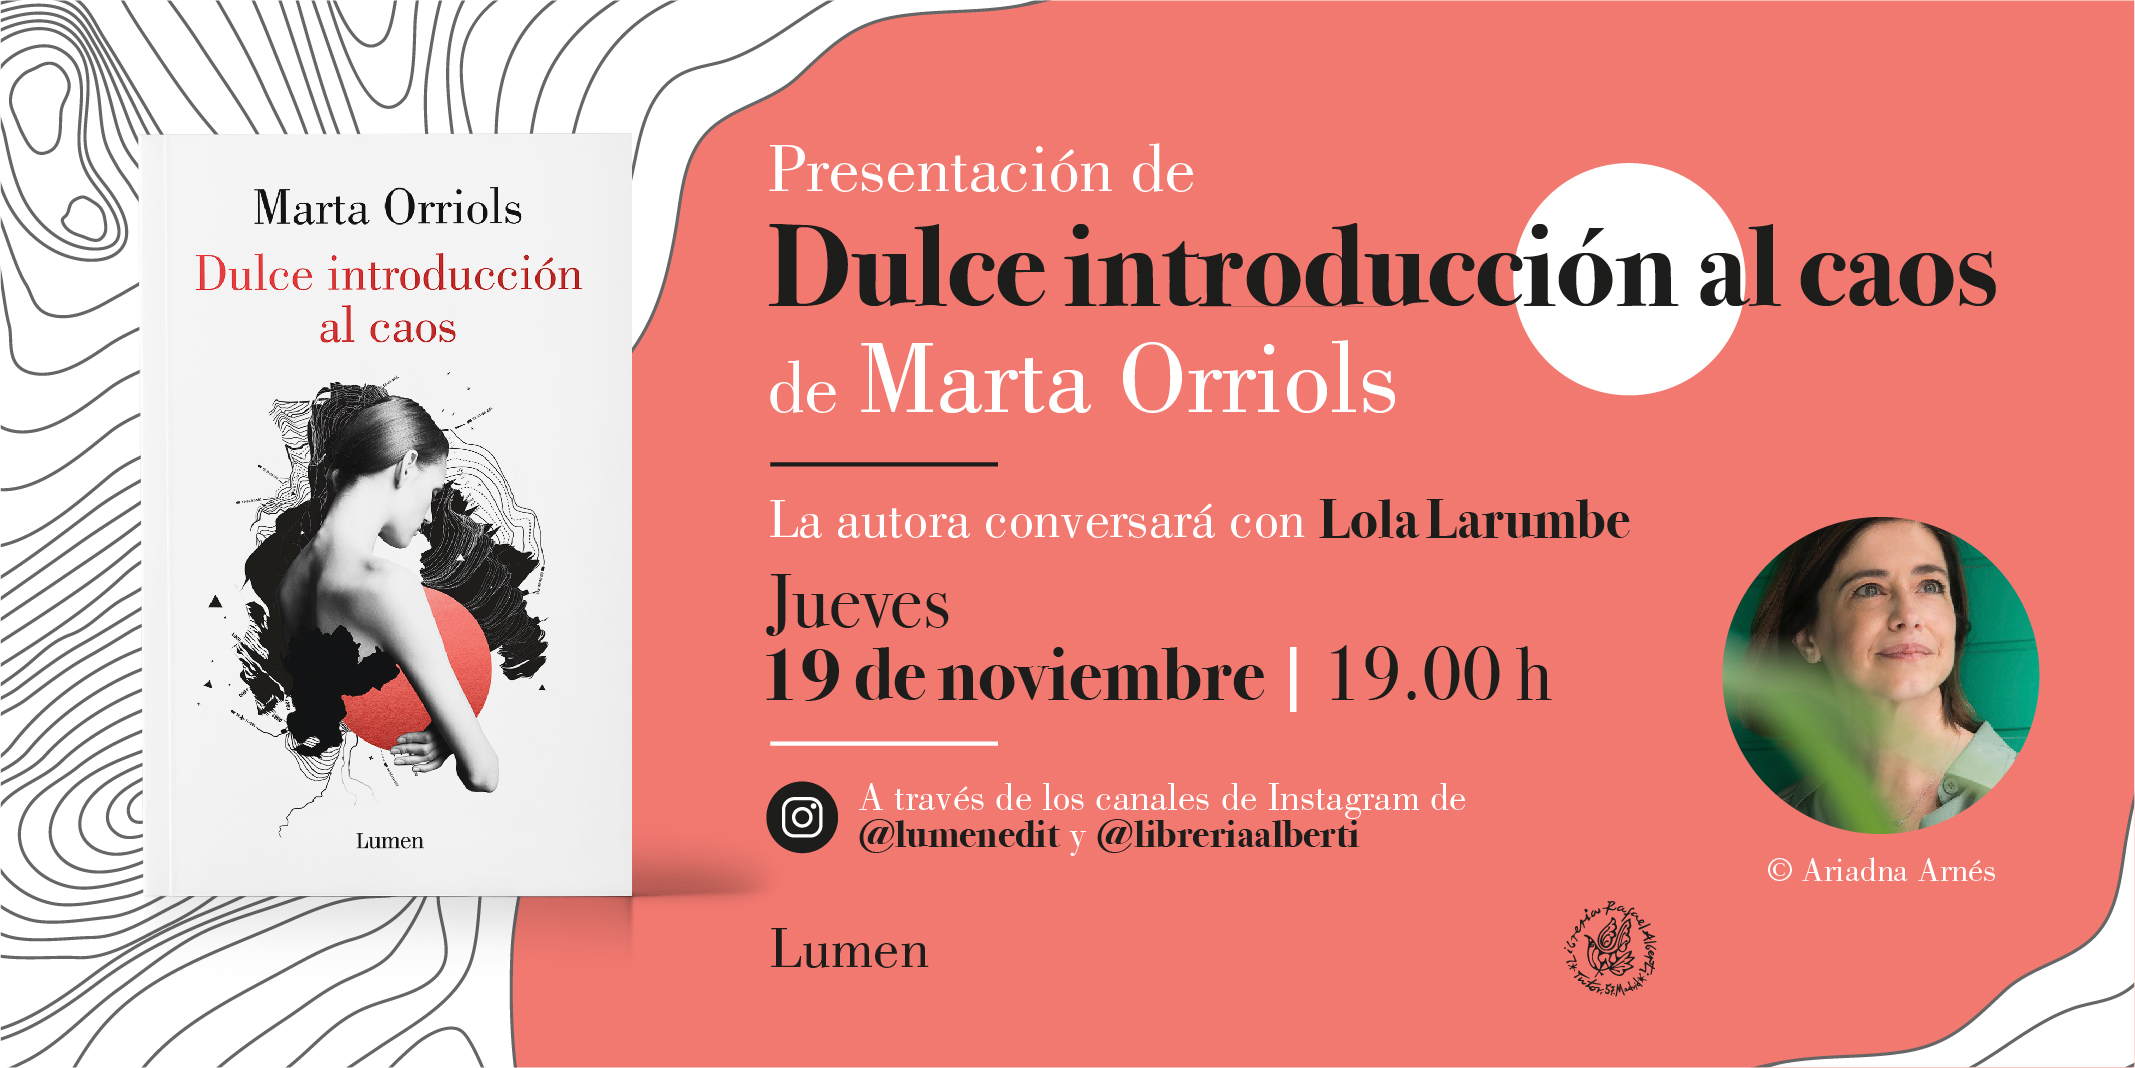 MARTA ORRIOLS presenta 'Dulce introducción al caos' (Lumen)